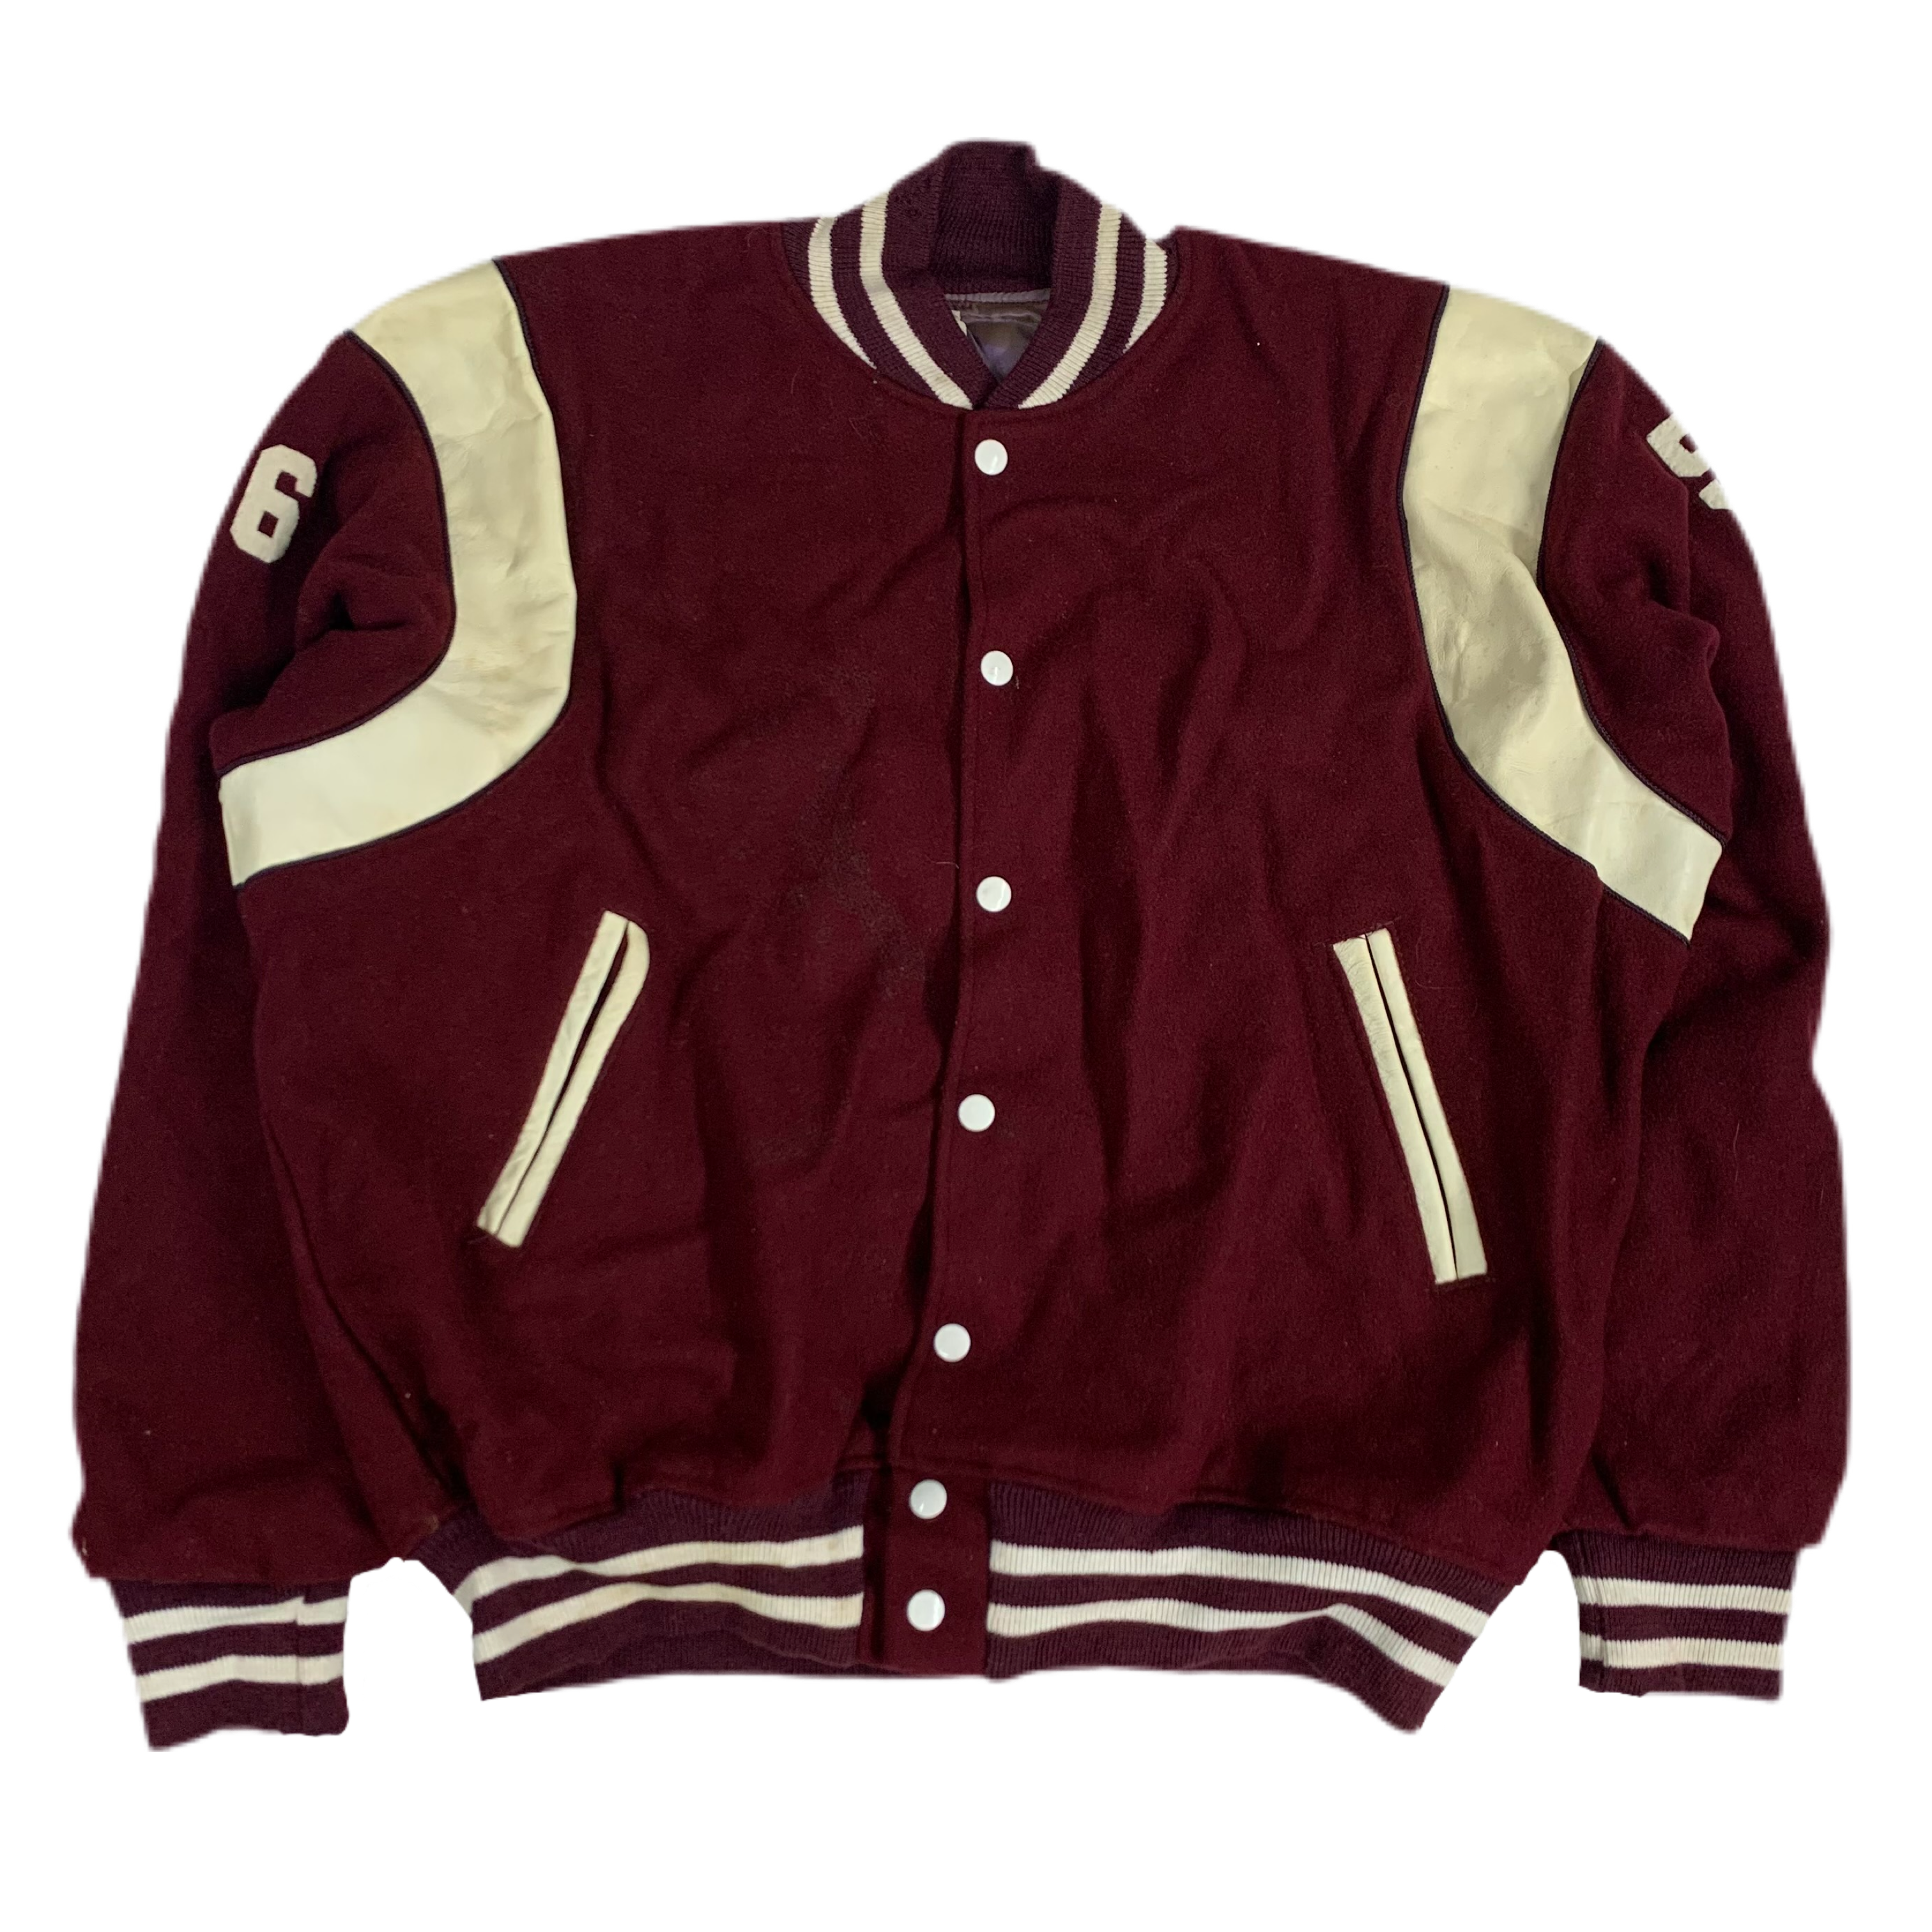 Vintage Felco Athletic Wear John Handley Judges Wool Varsity Jacket